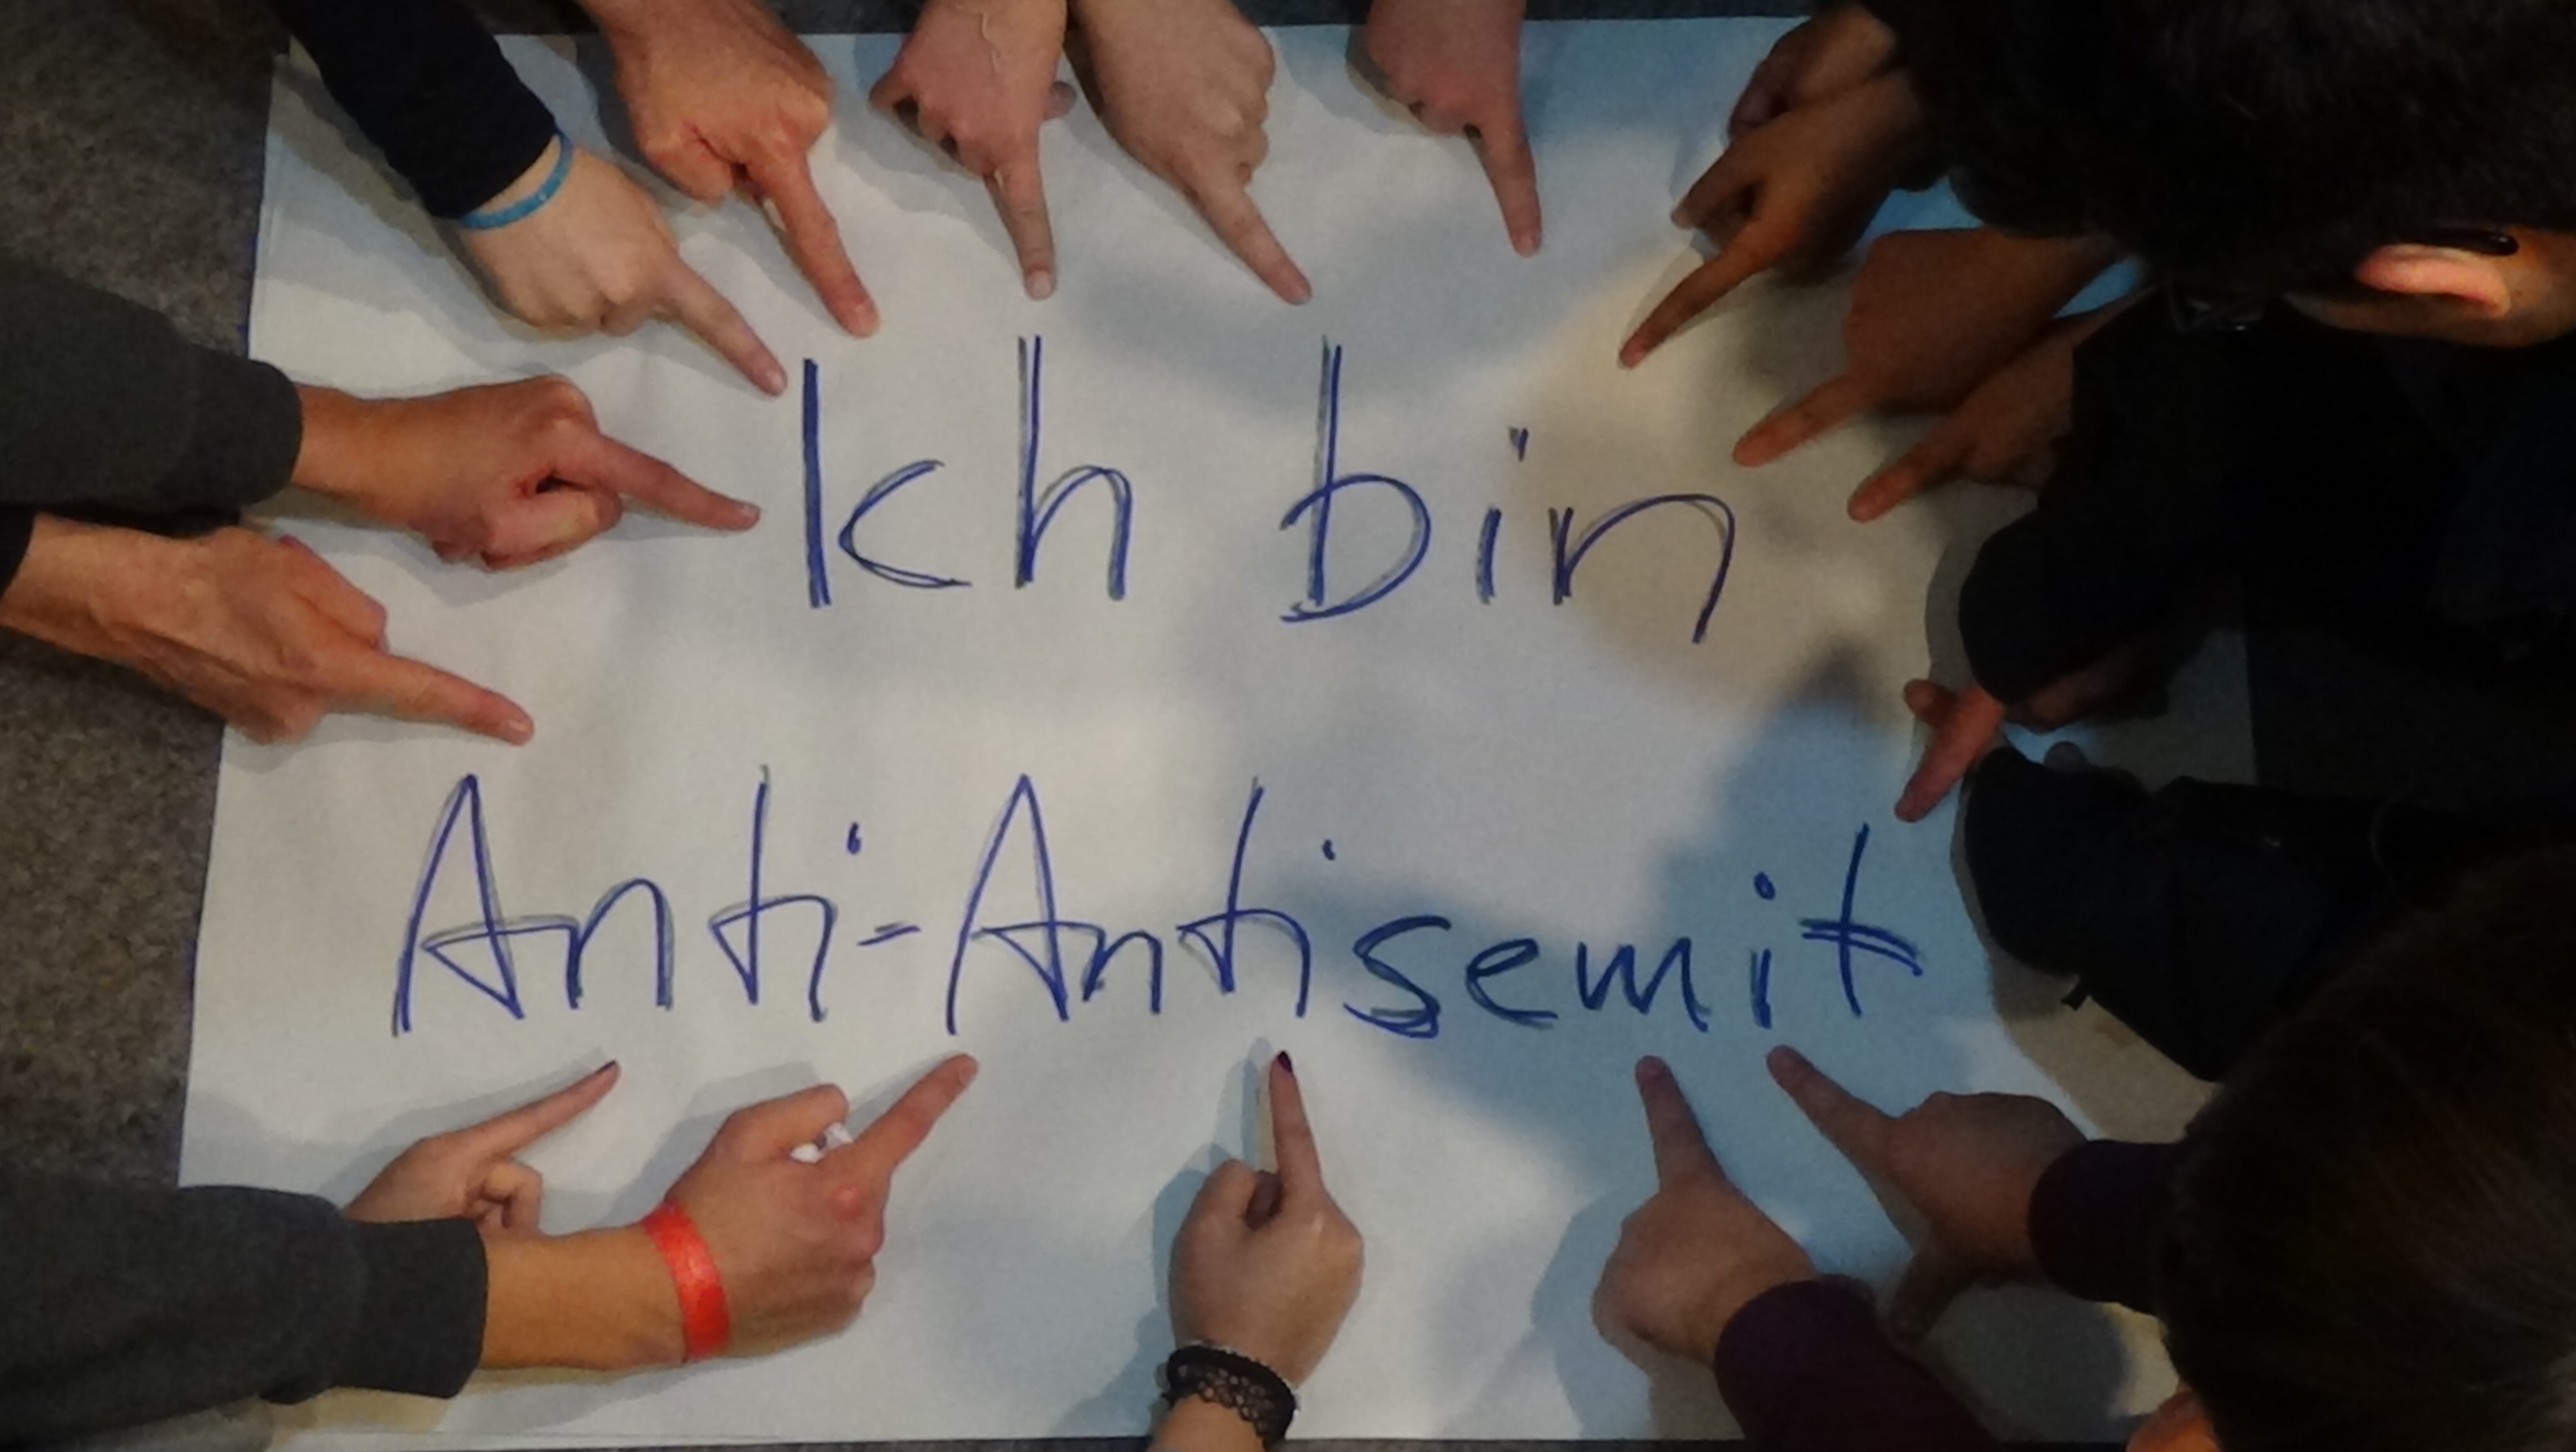 Finger zeigen auf Poster mit der Aufschrift "Ich bin Anti-Antisemit".